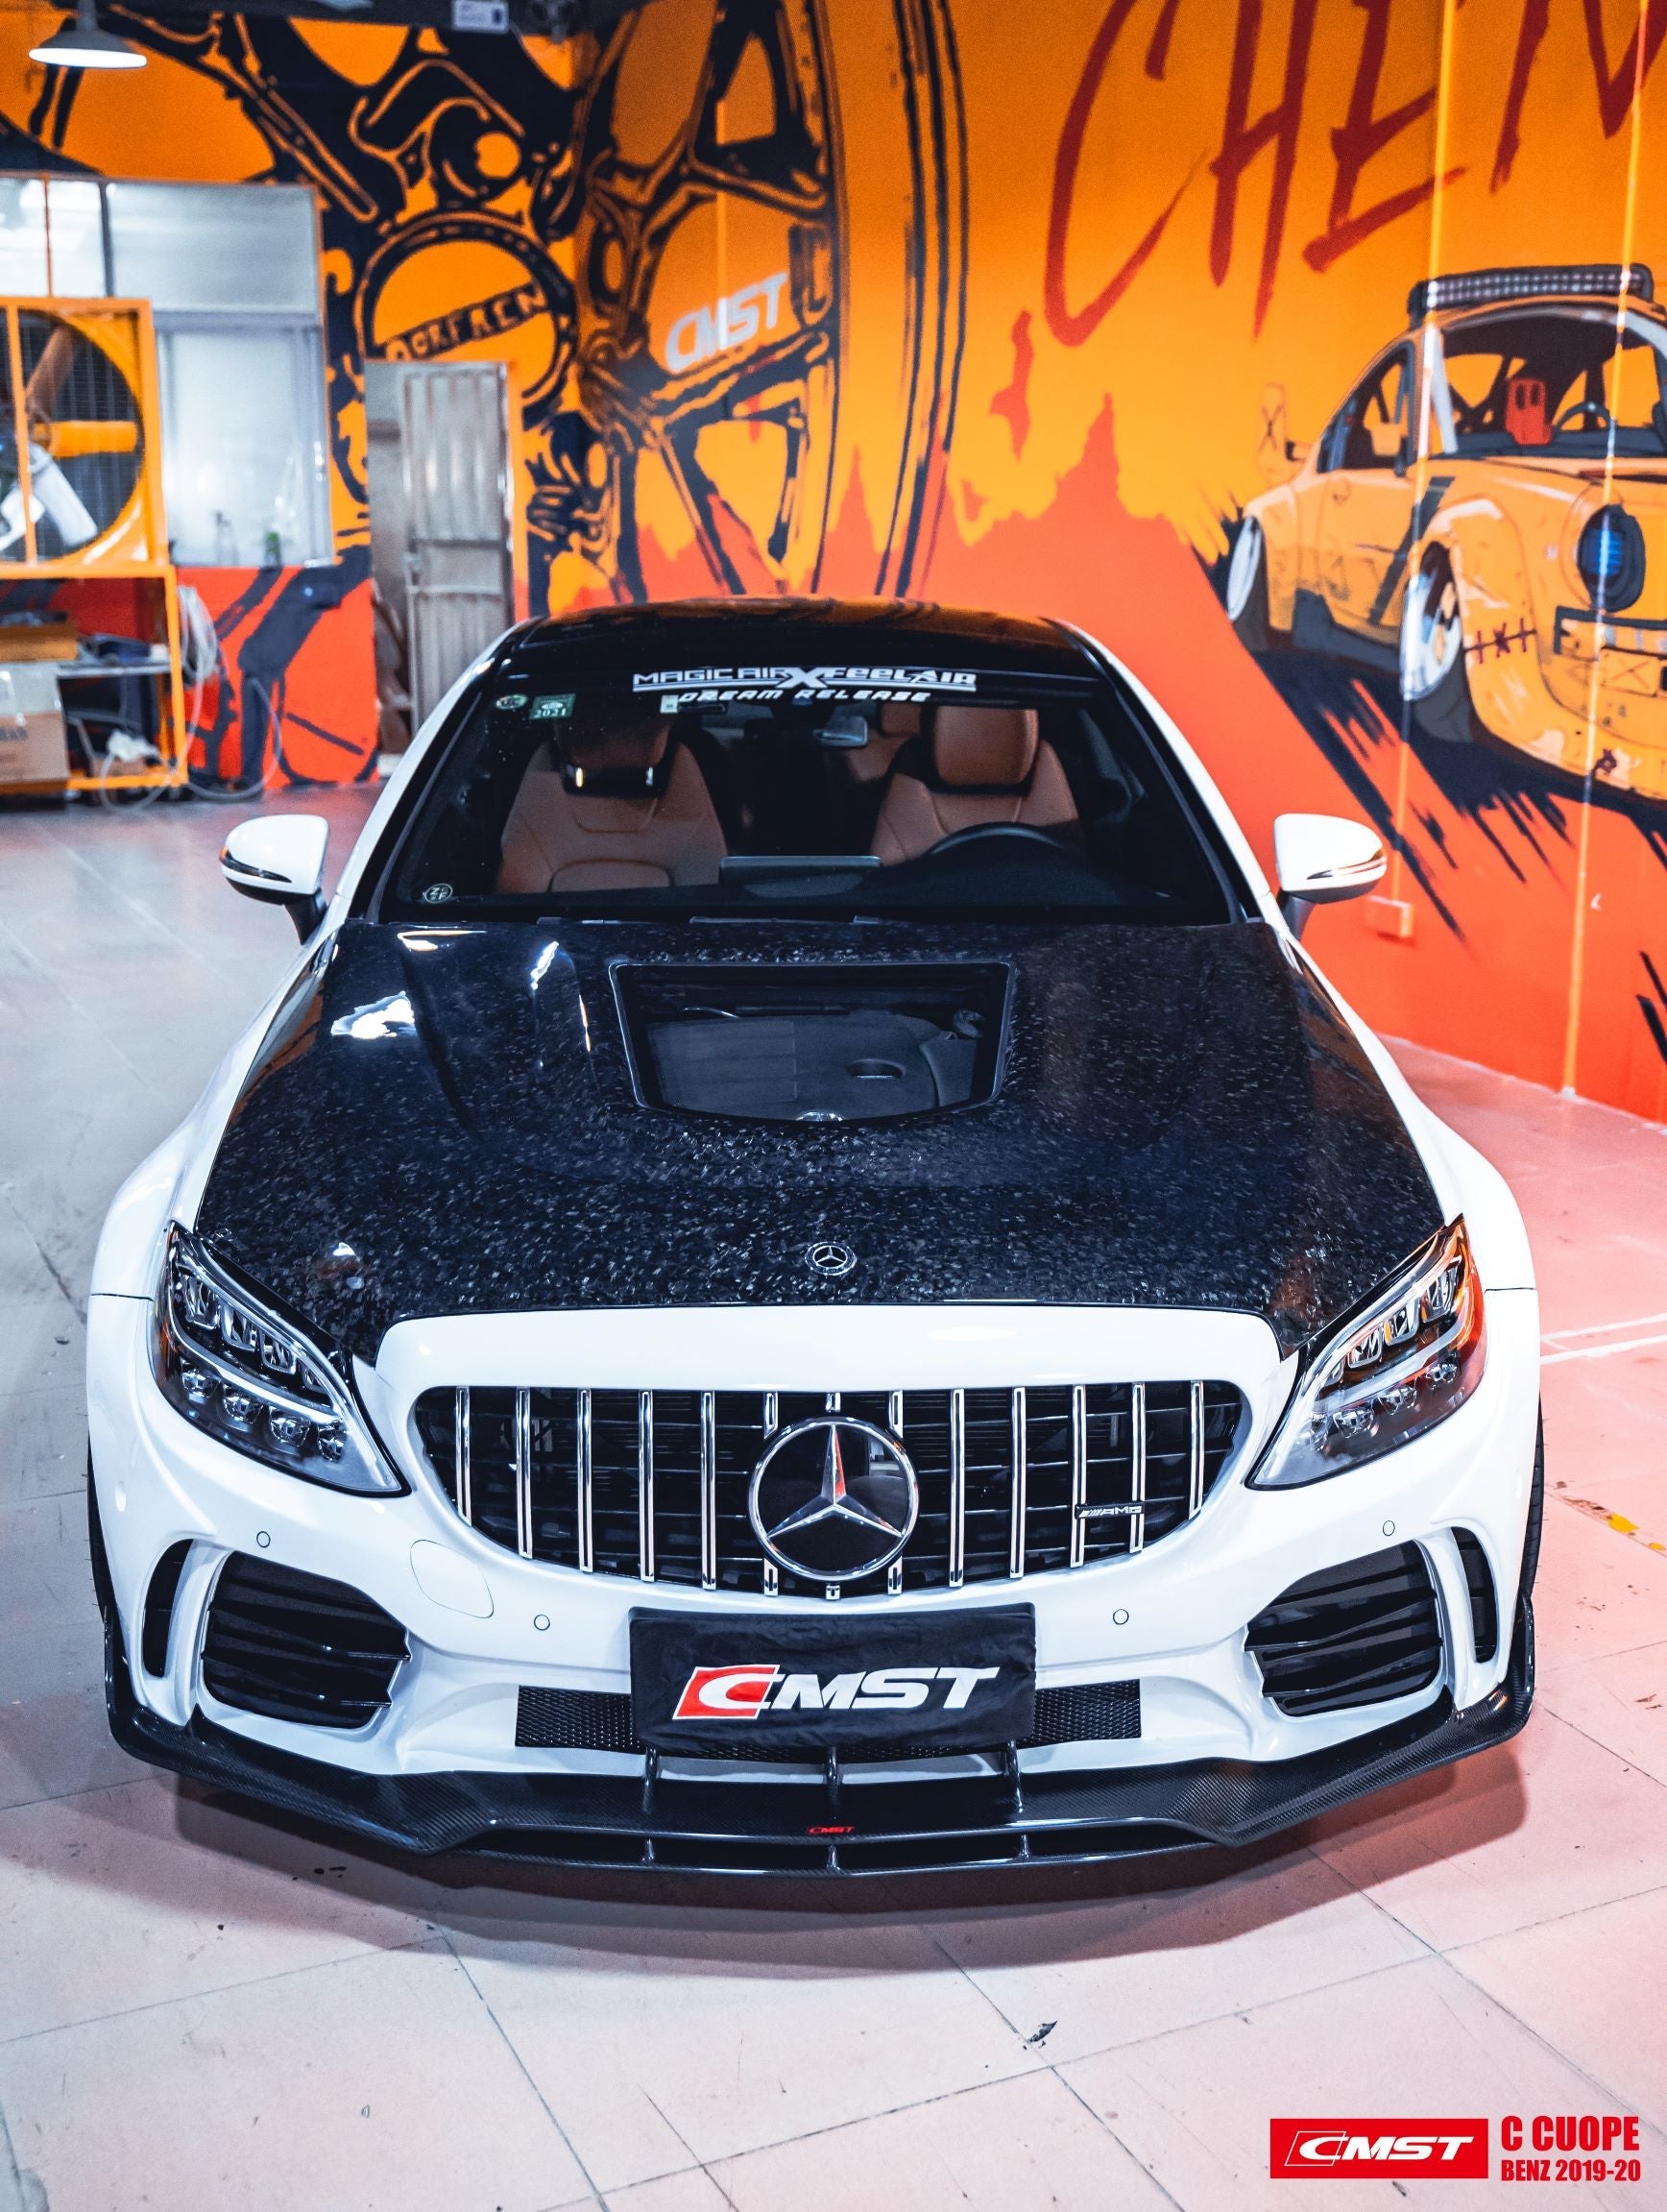 CMST Tuning Carbon Tempered Glass Transparent Hood For Mercedes Benz 2015-2020 W205 Sedan C300 C43 C Coupe 2 Door 4 Door Ver.2